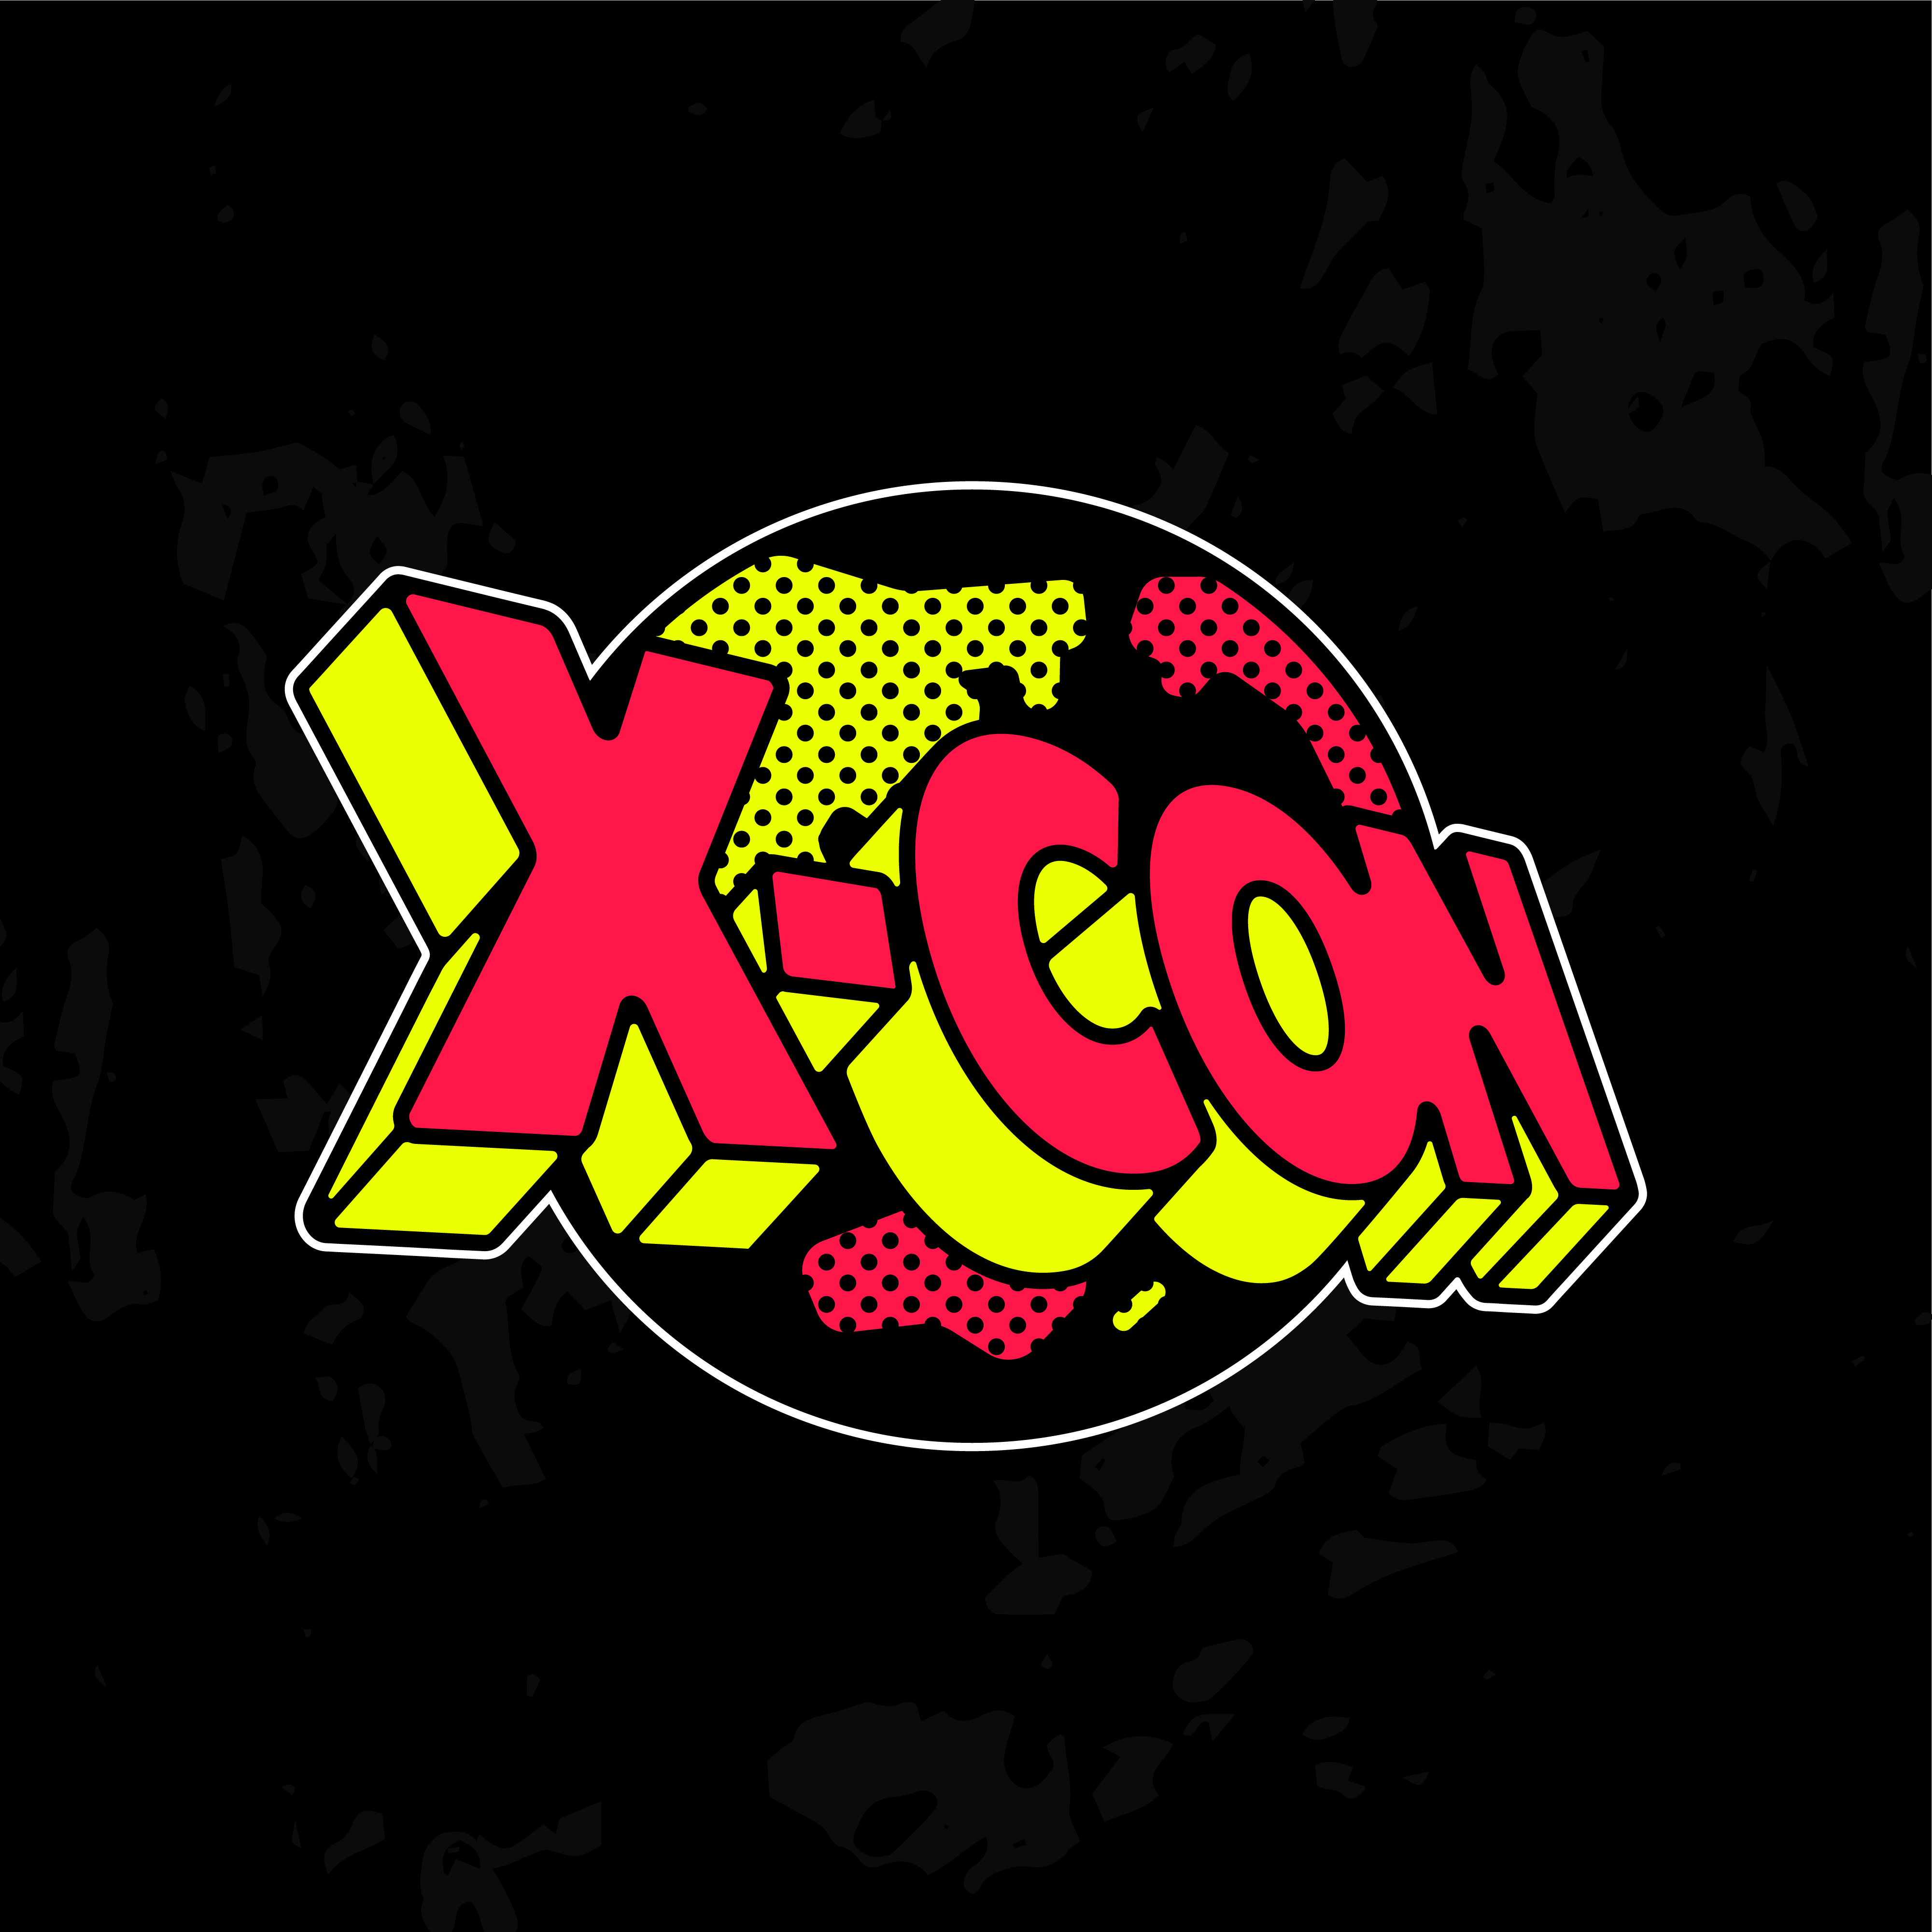 『X-CON』